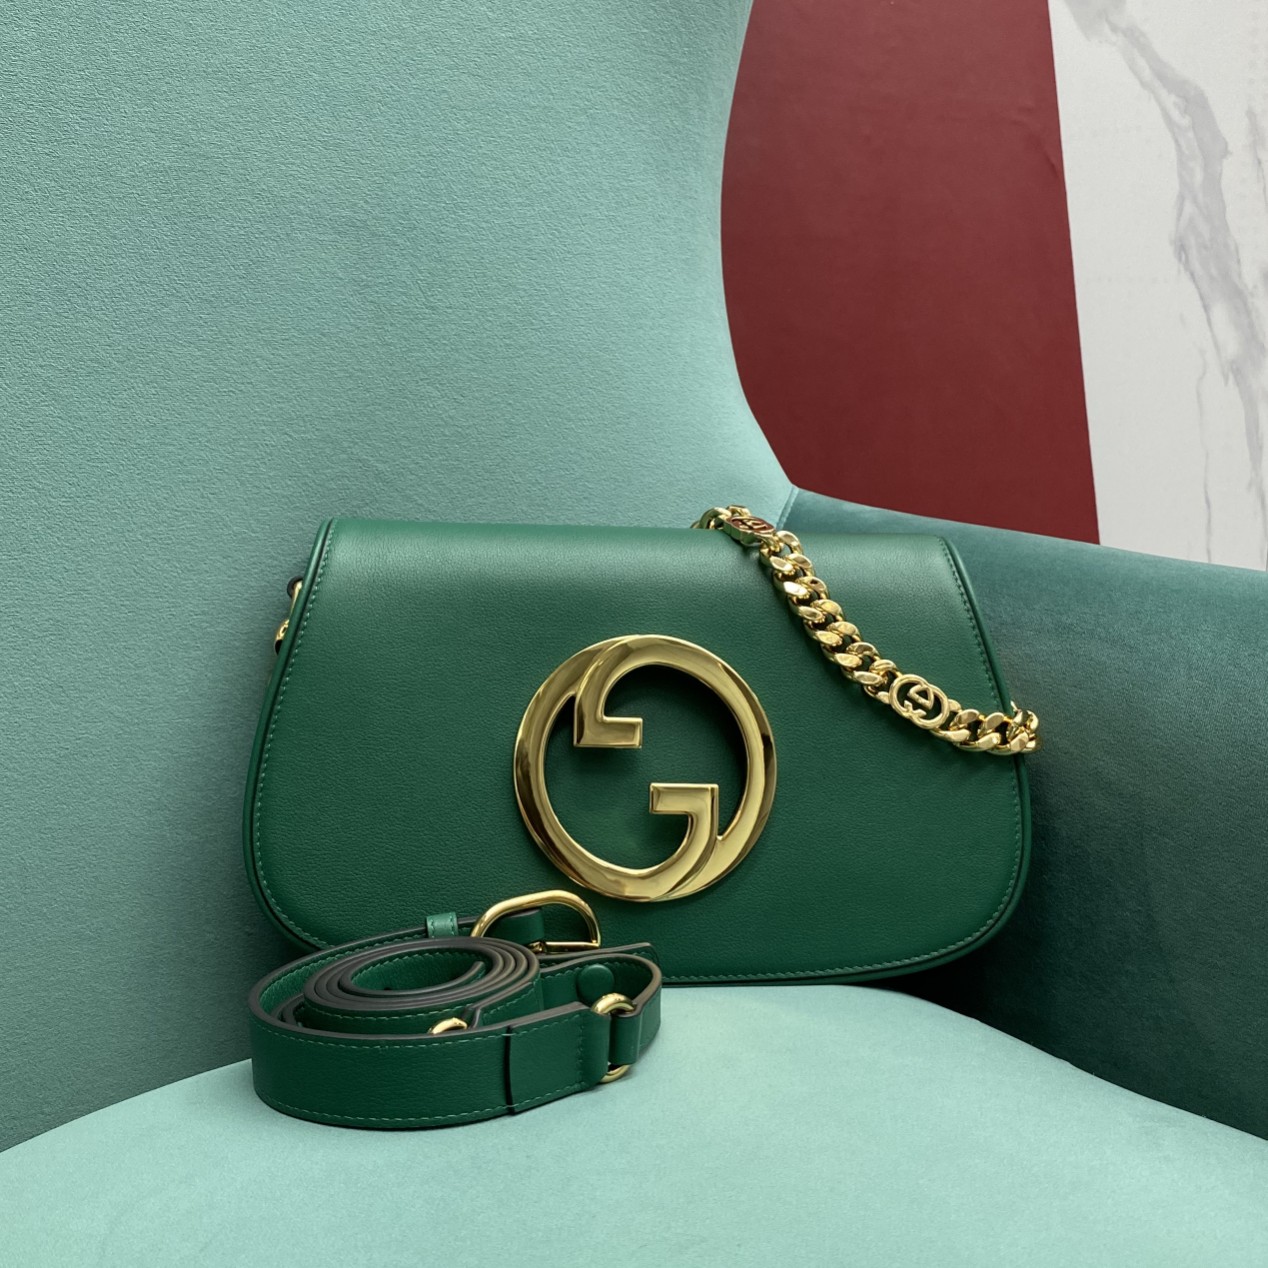 【P1580】厂家直销 Gucci古奇699268绿色全皮系列双G标识链条单肩斜挎包